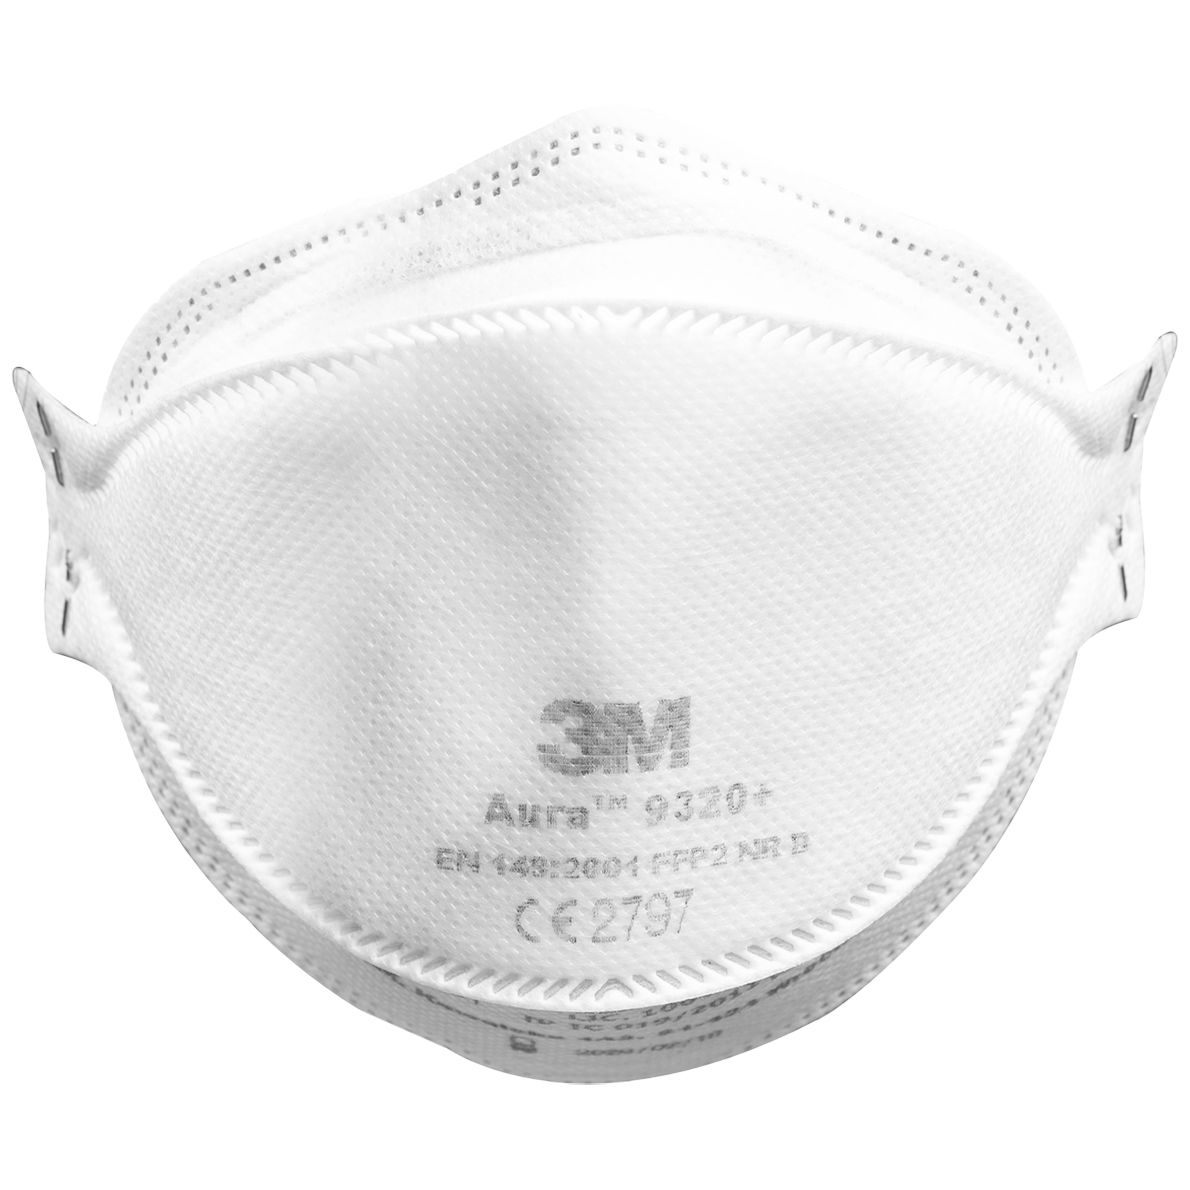 ABVERKAUF: 3M Aura 9320+ FFP2-Maske - Einweg-Staubschutzmaske ohne Ventil - EN 149 - gegen Holz- & Metallstaub